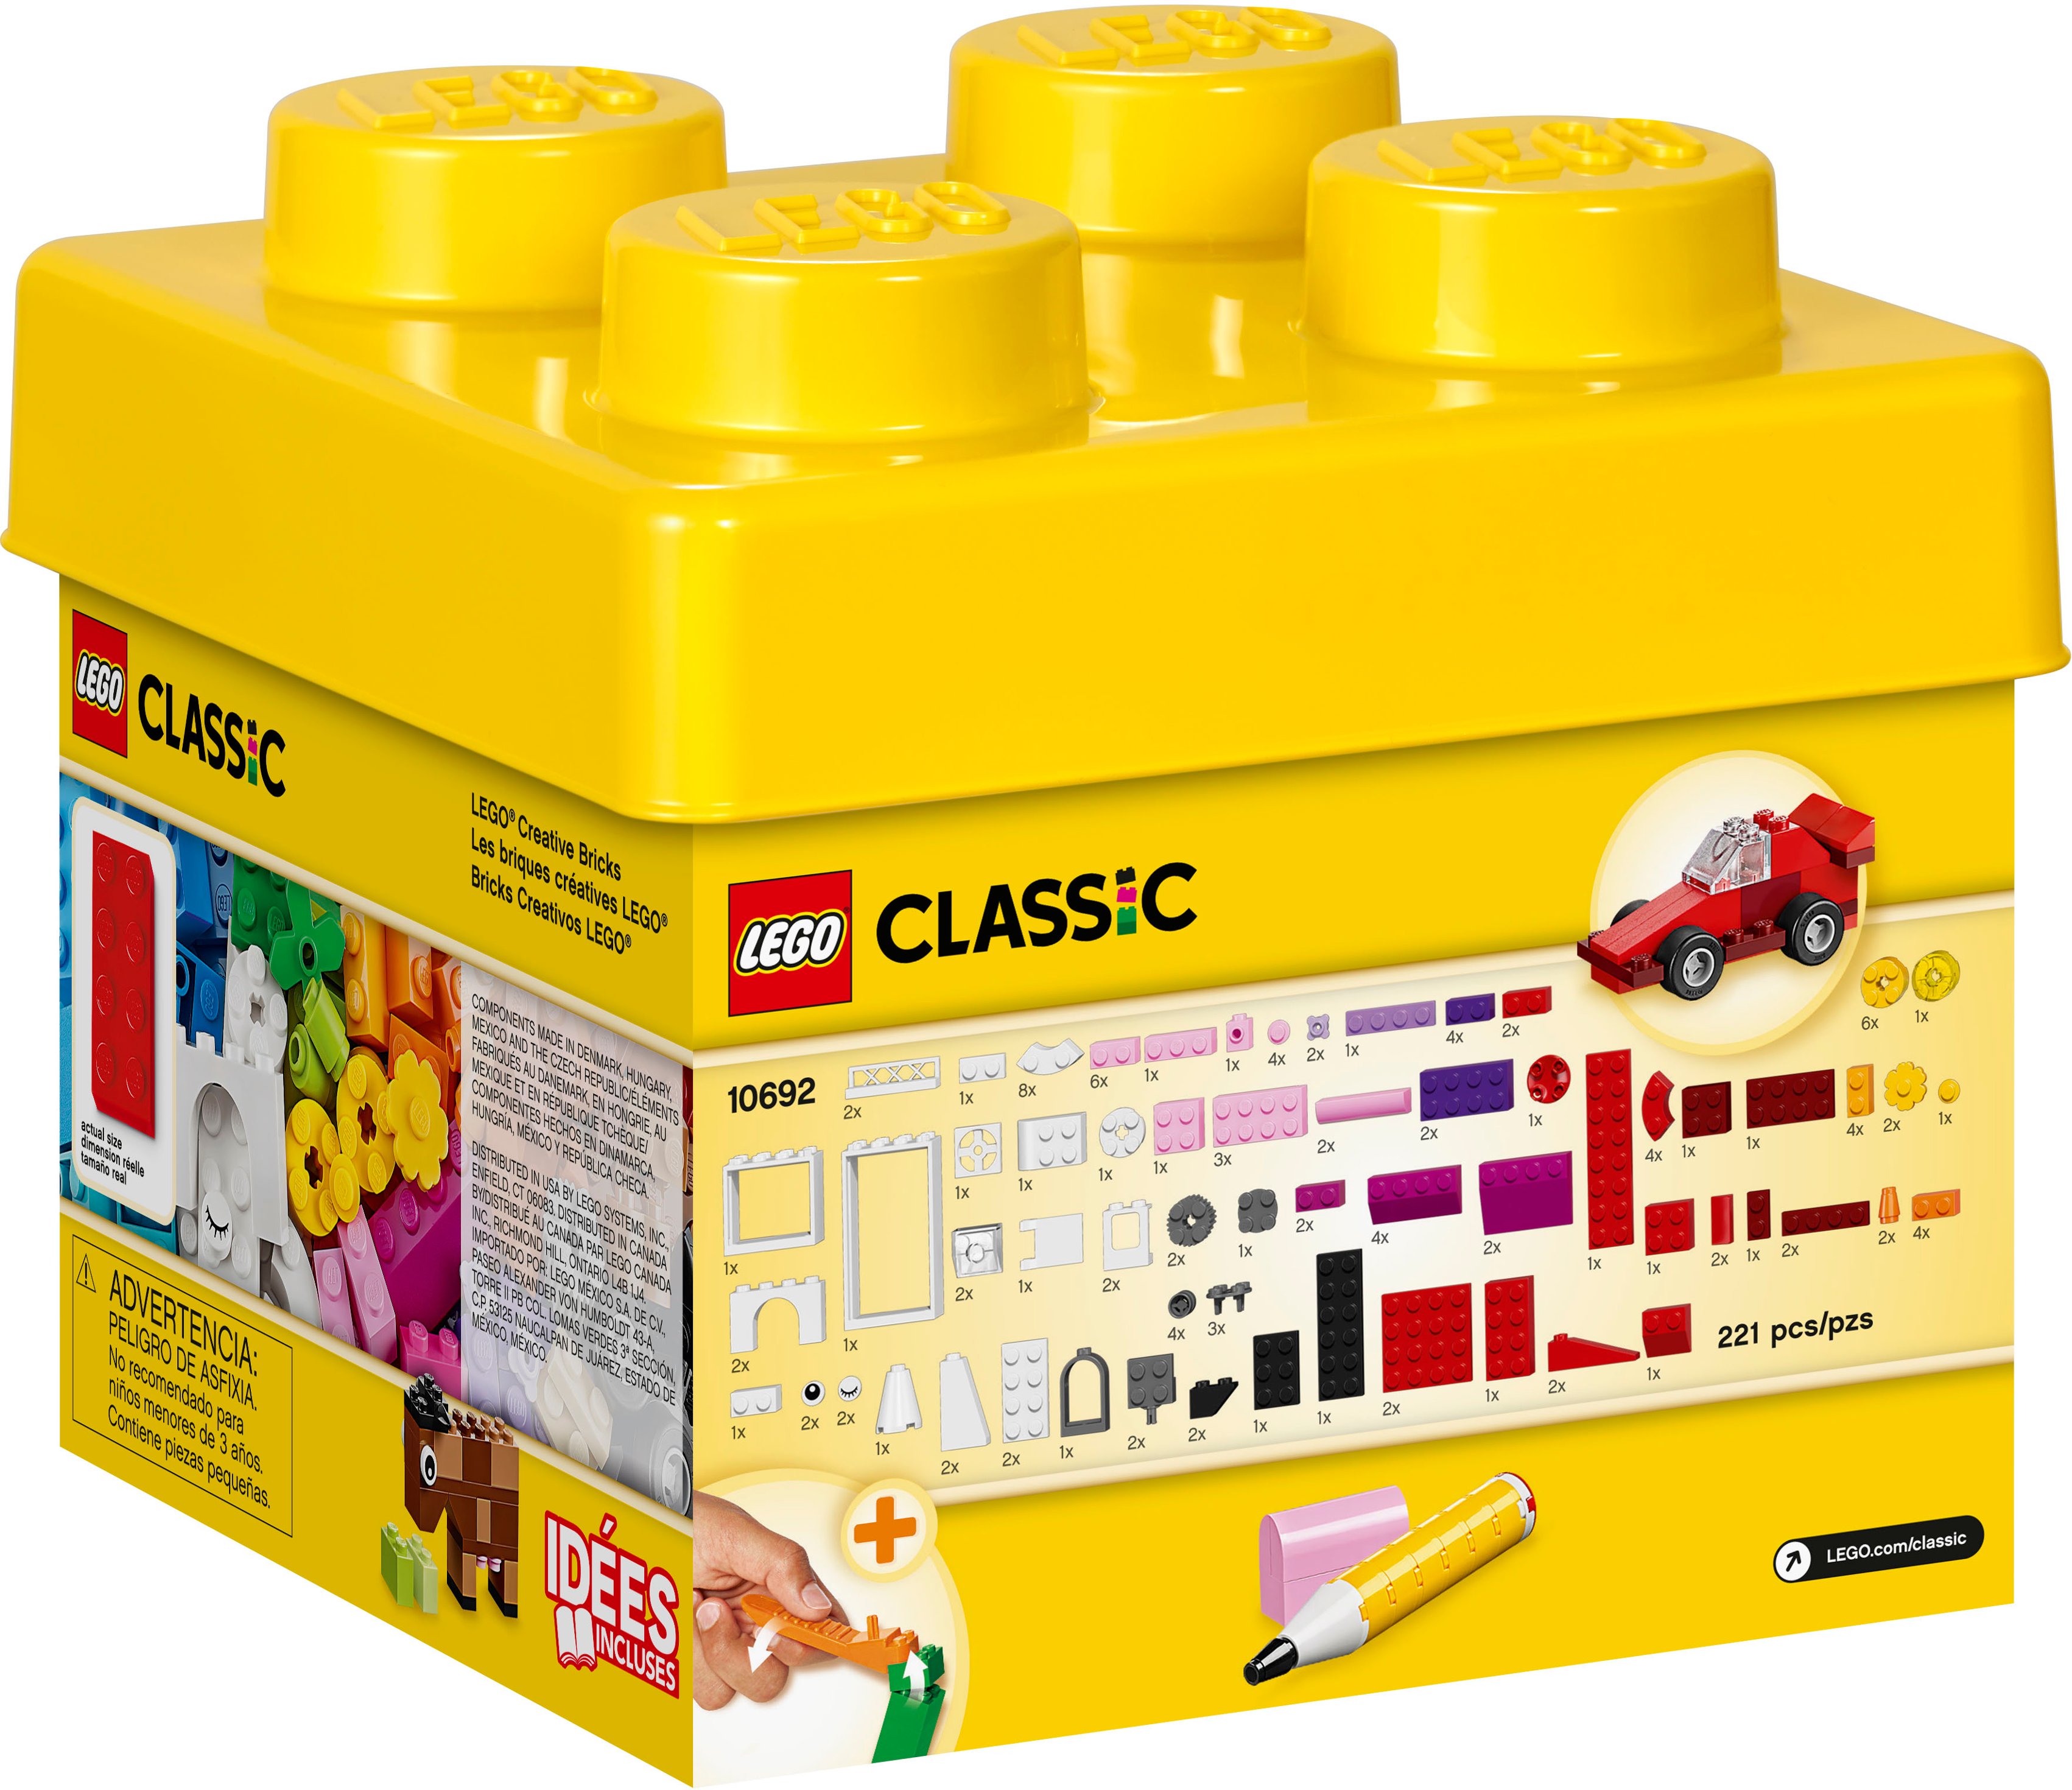 LEGO CLASSIC 10692 MATTONCINI CREATIVI 